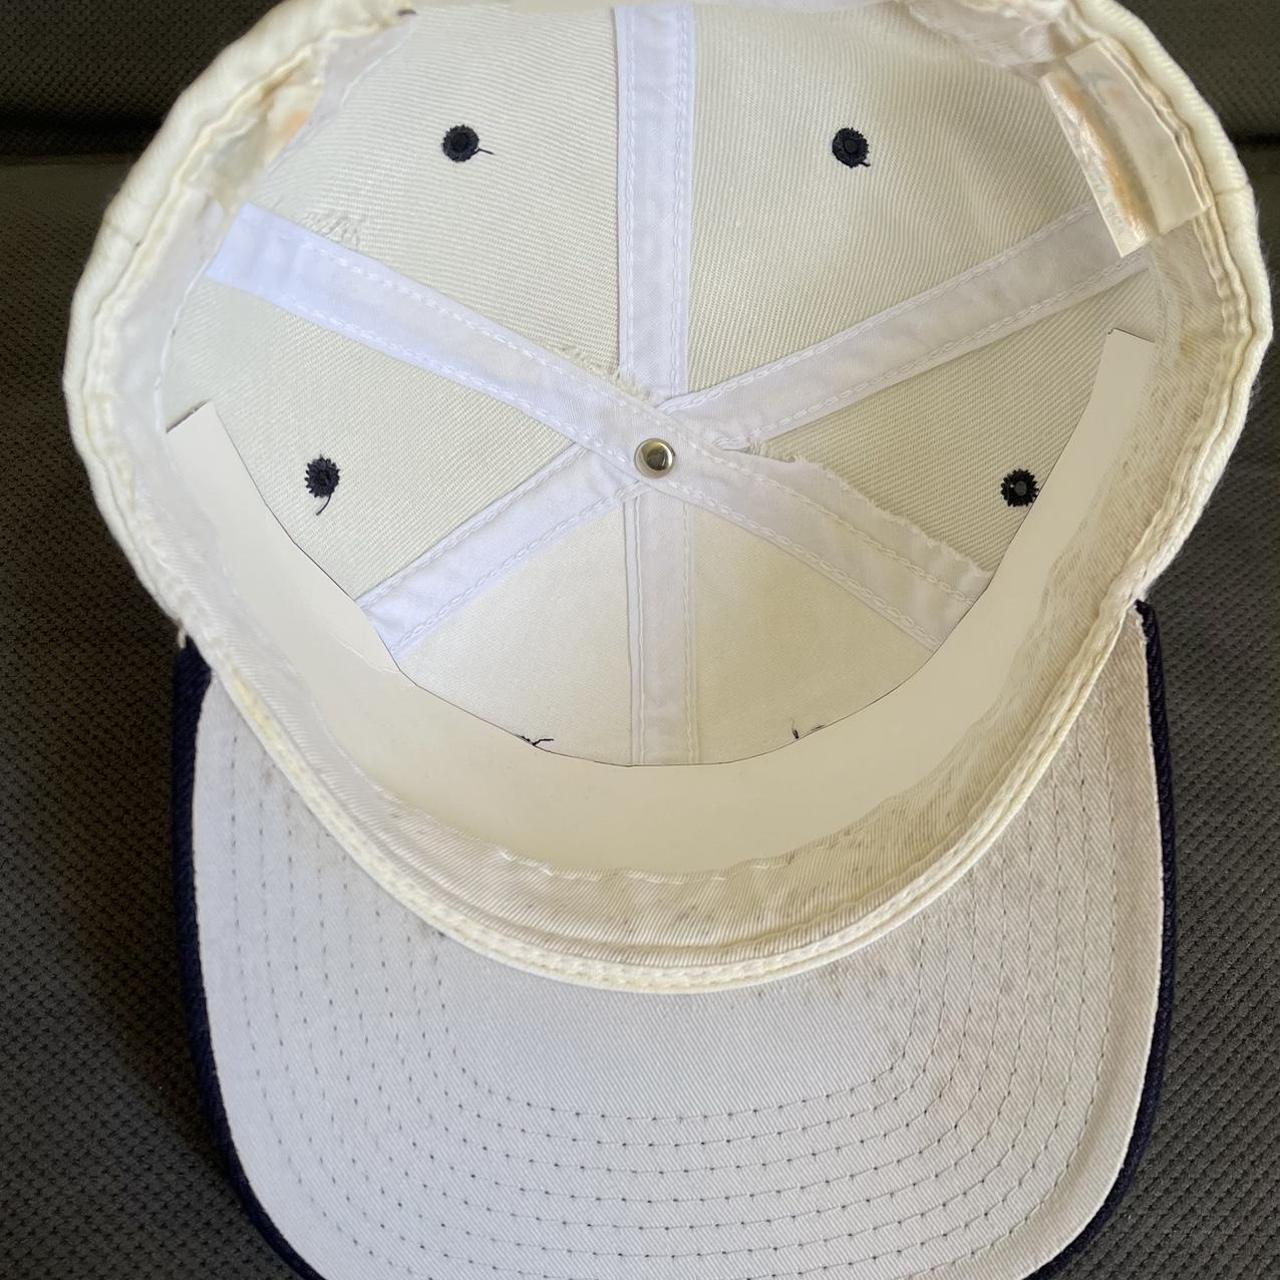 Vintage Field of Dreams Dyersville Iowa Pinstripe Hat Cap Snapback 1989  Baseball | SidelineSwap